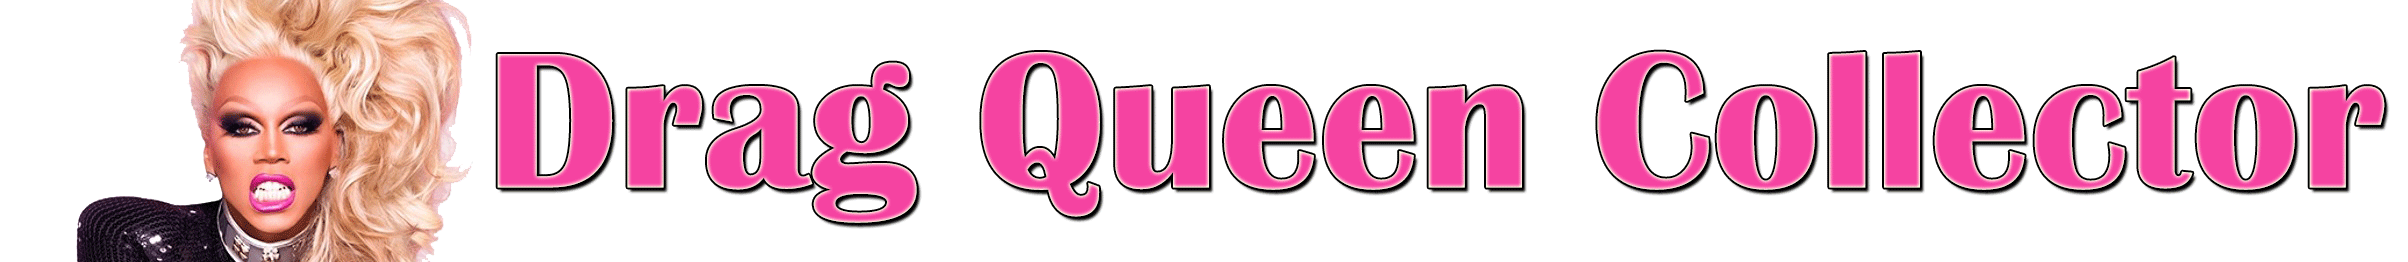 The Drag Queen Collector Logo